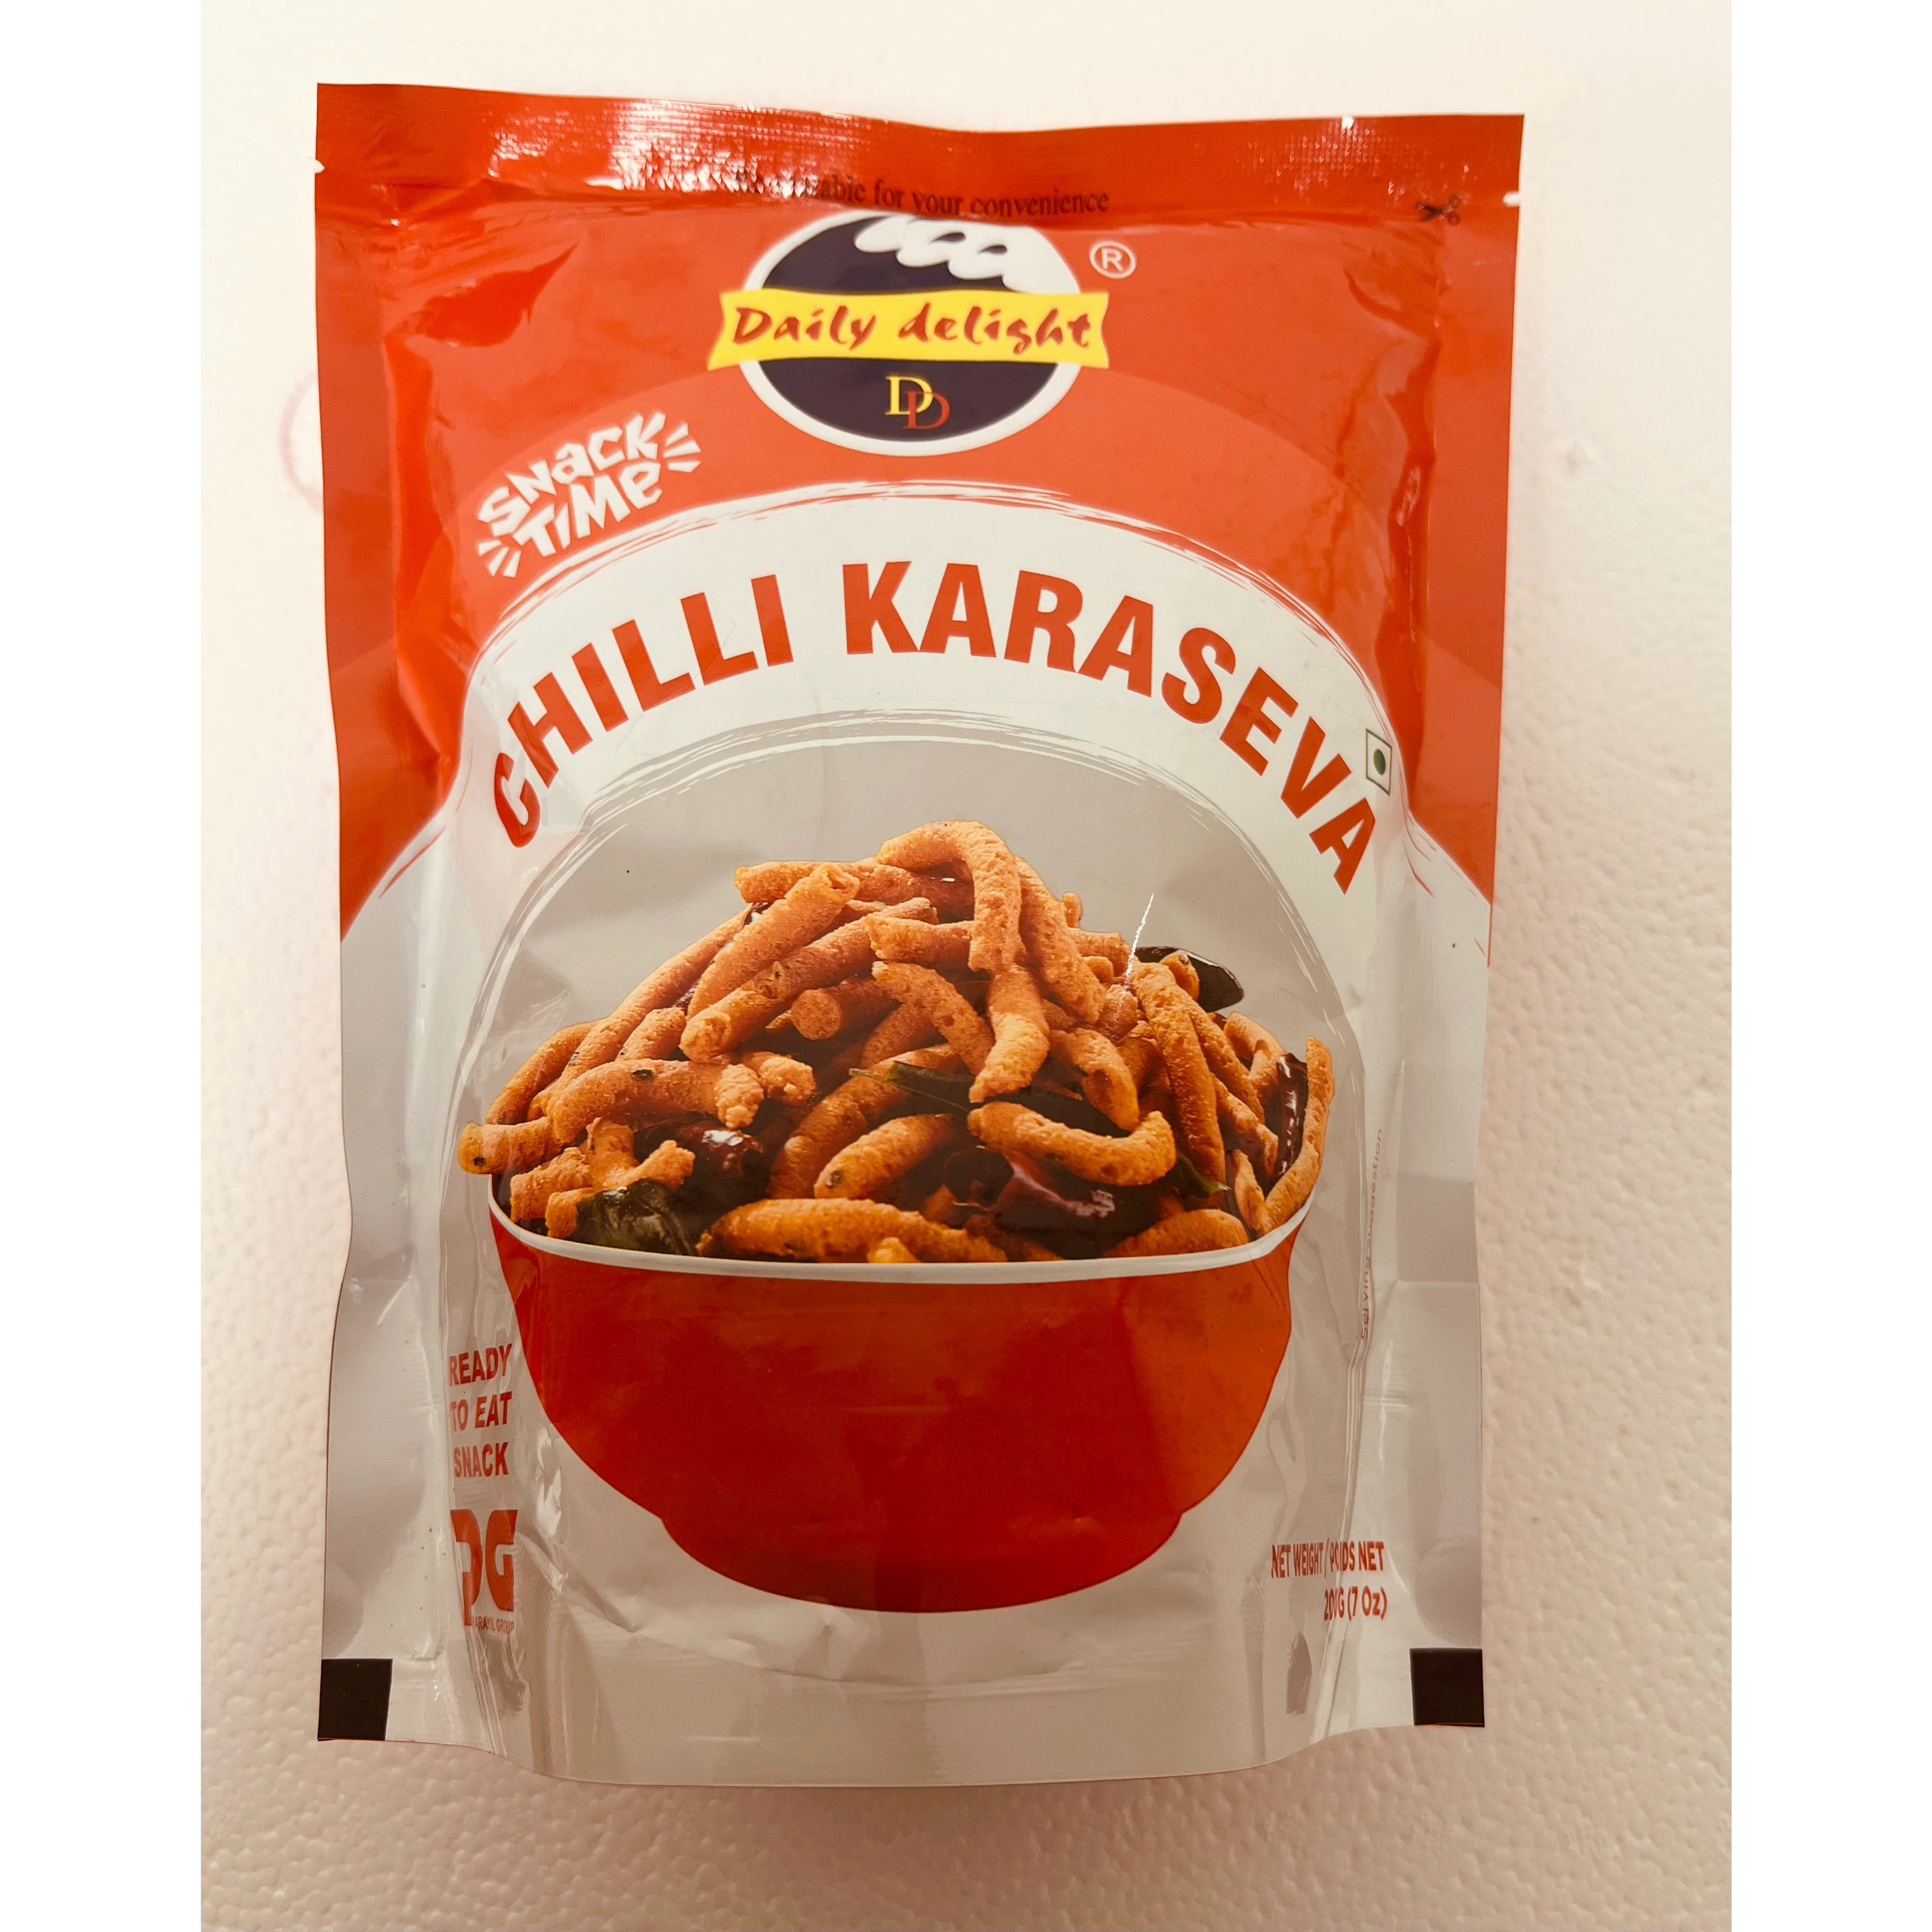 Pack of 3 - Daily Delight Chilli Karaseva - 200 Gm (7 Oz)